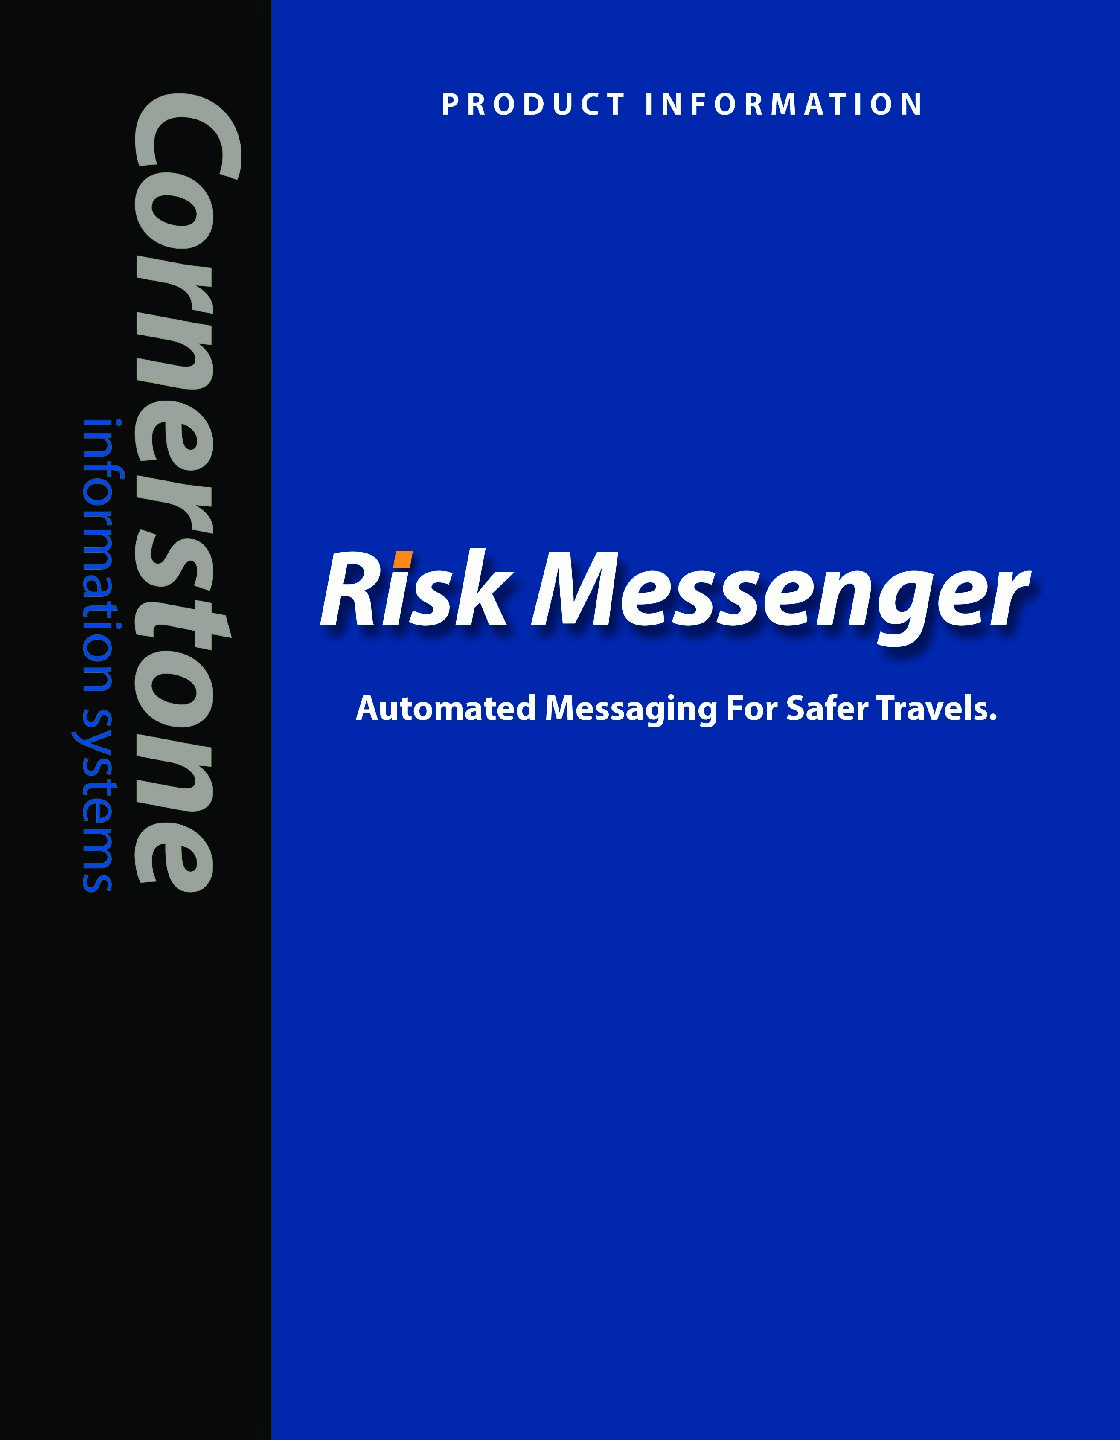 Risk Messenger